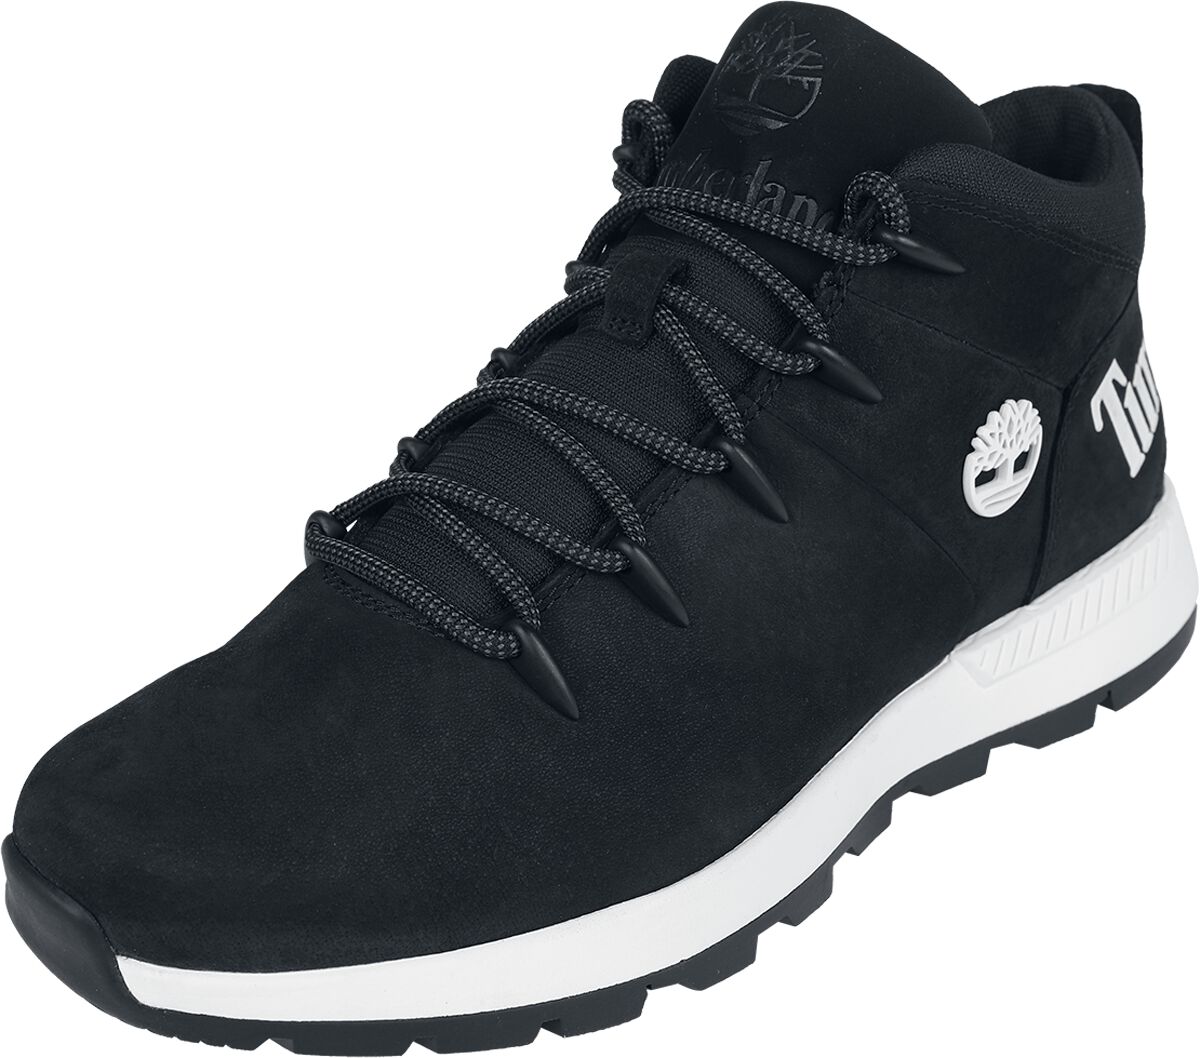 Timberland Sneaker - Sprint Trekker Mid Lace Up - EU41 bis EU46 - für Männer - Größe EU44 - schwarz